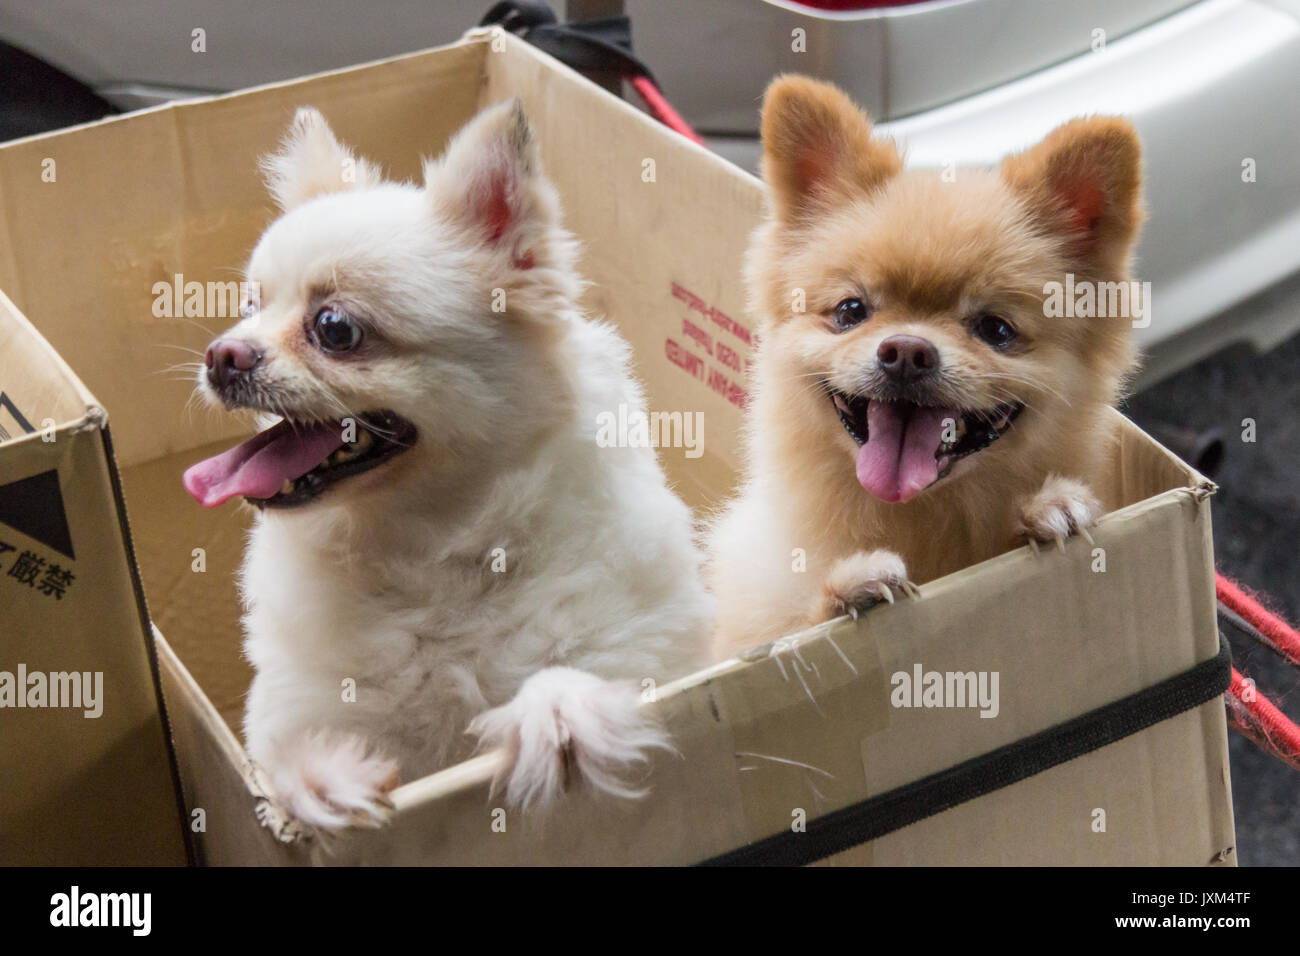 Bianco e Marrone di chihuahua cani in una scatola di cartone Foto Stock